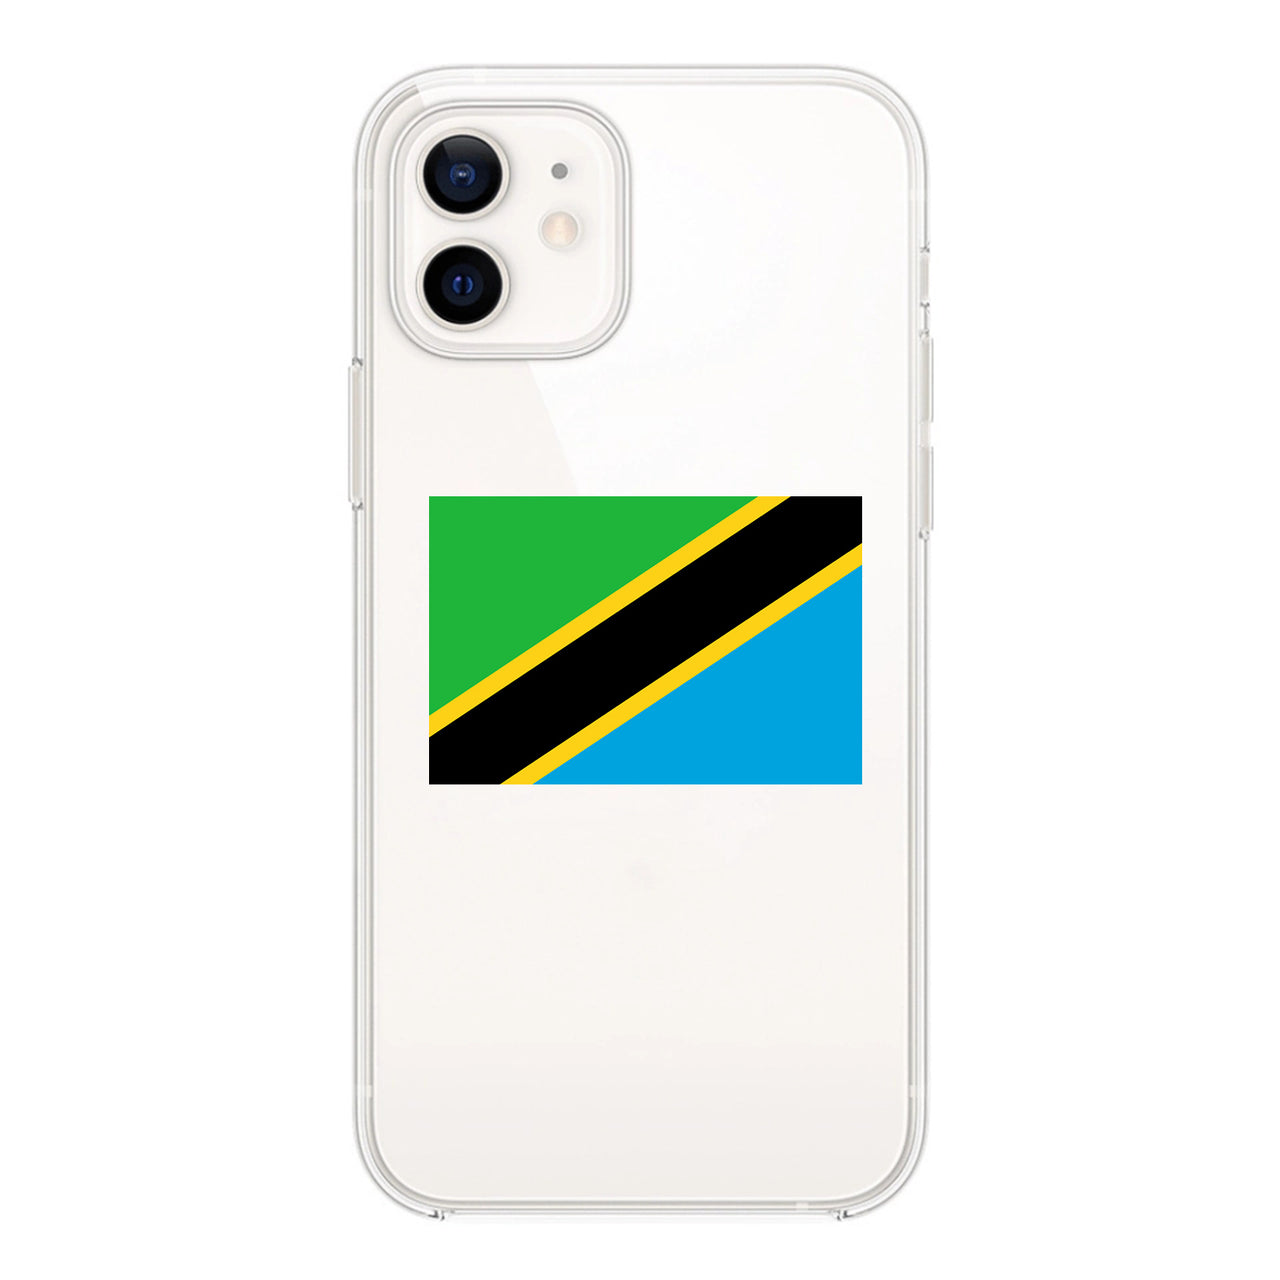 Tanzania Designed Transparent Silicone iPhone Cases